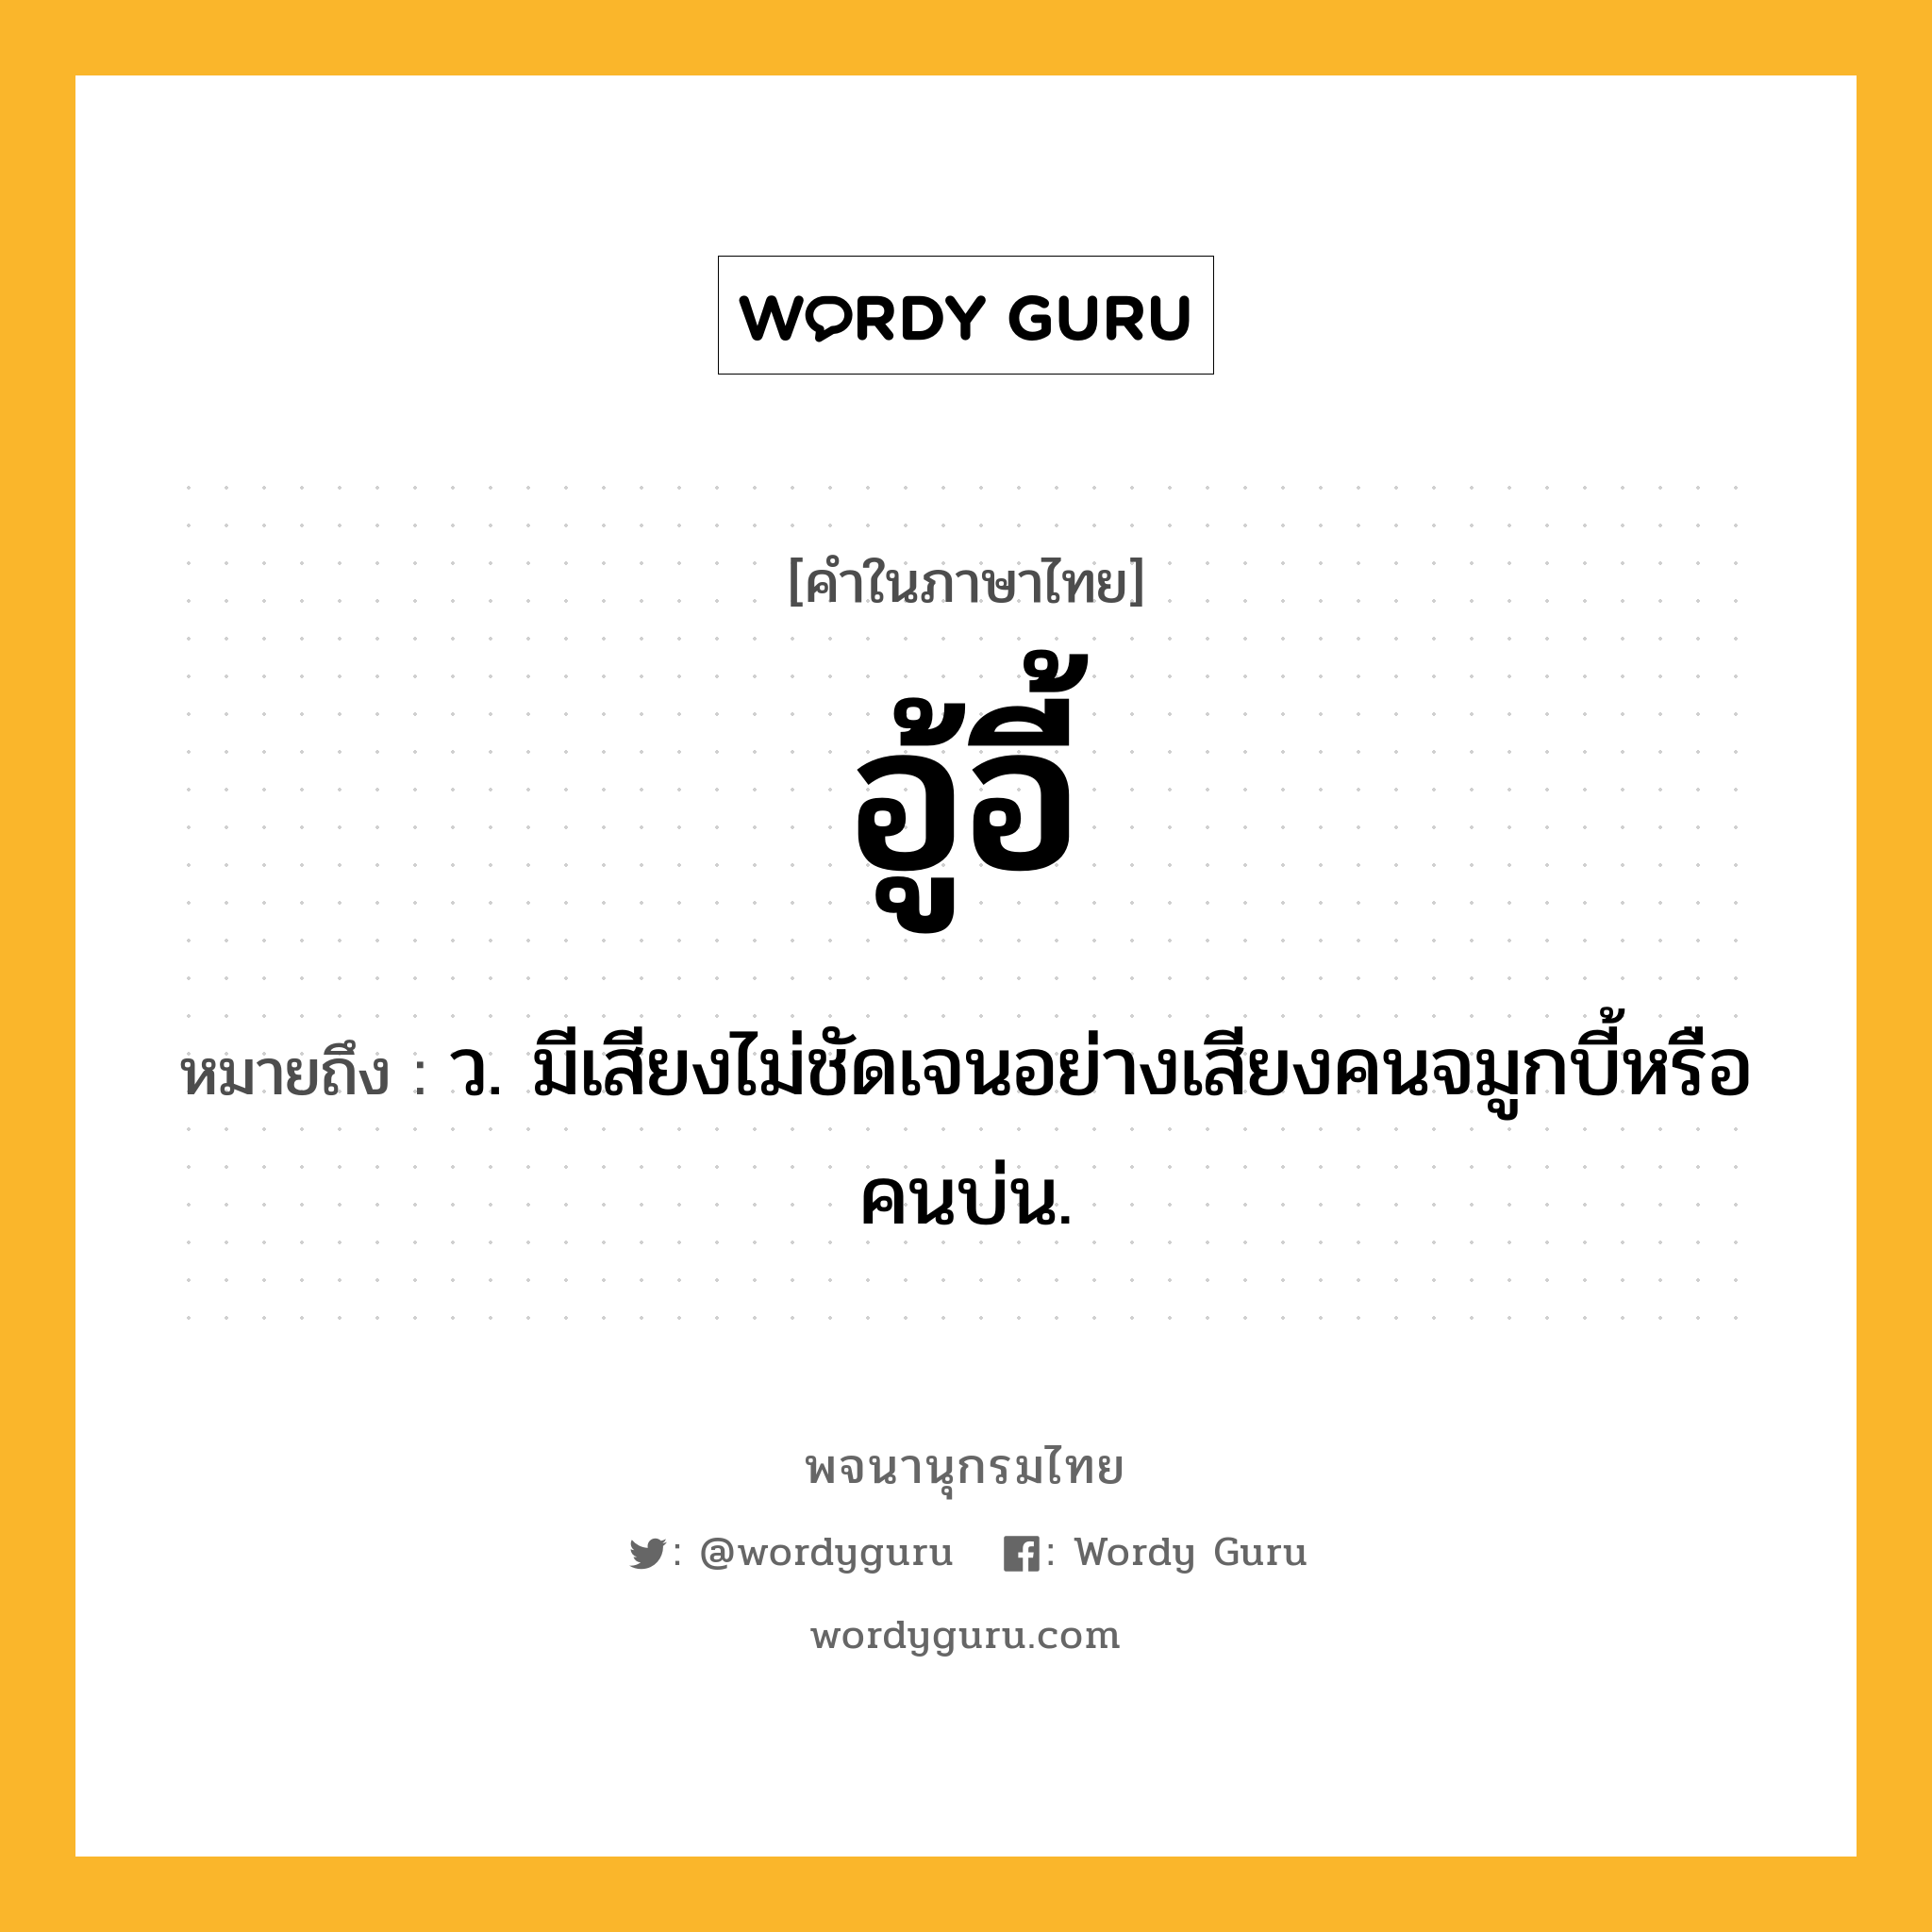 อู้อี้ ความหมาย หมายถึงอะไร?, คำในภาษาไทย อู้อี้ หมายถึง ว. มีเสียงไม่ชัดเจนอย่างเสียงคนจมูกบี้หรือคนบ่น.